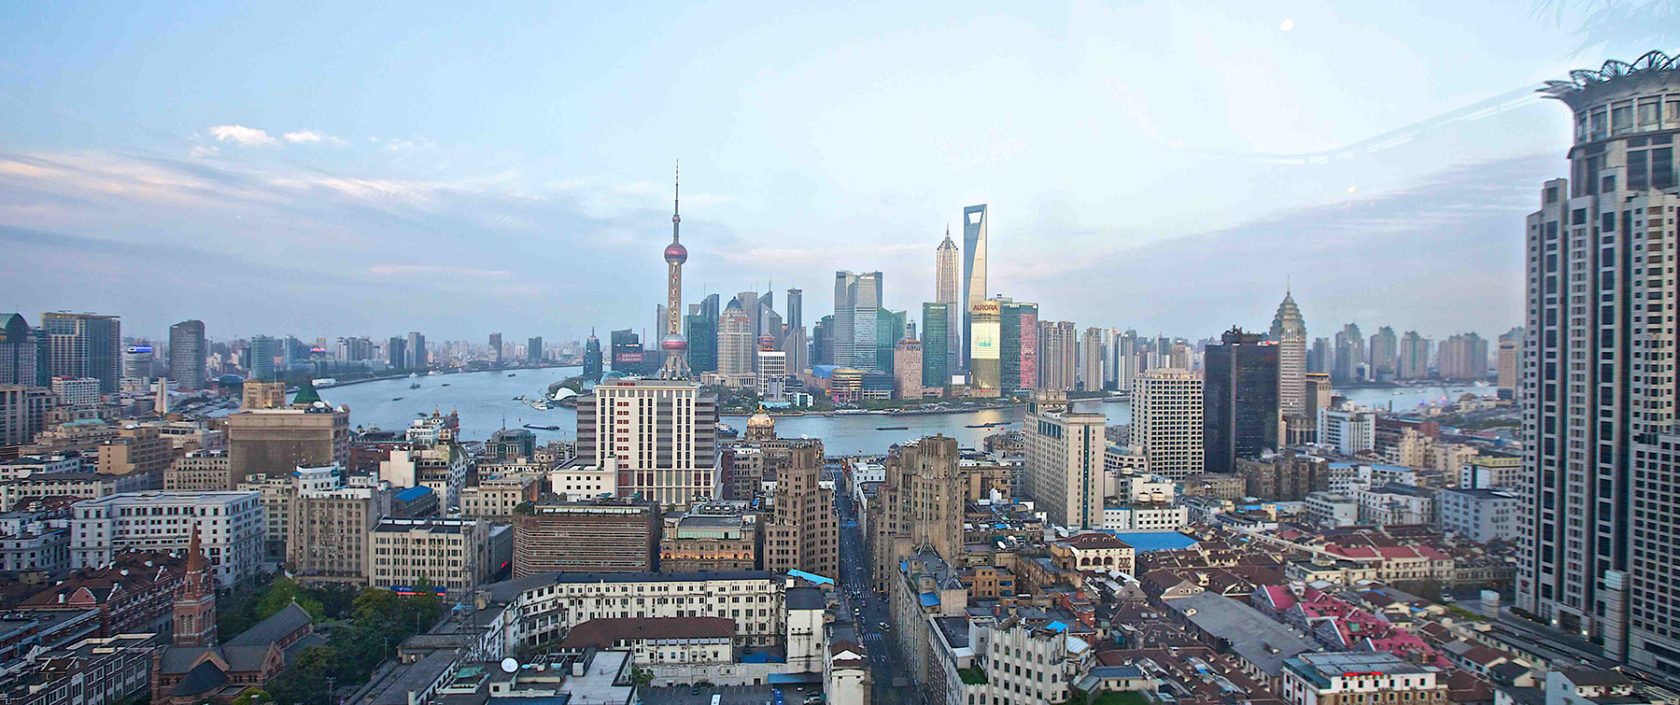 photo of the shanghai skyline